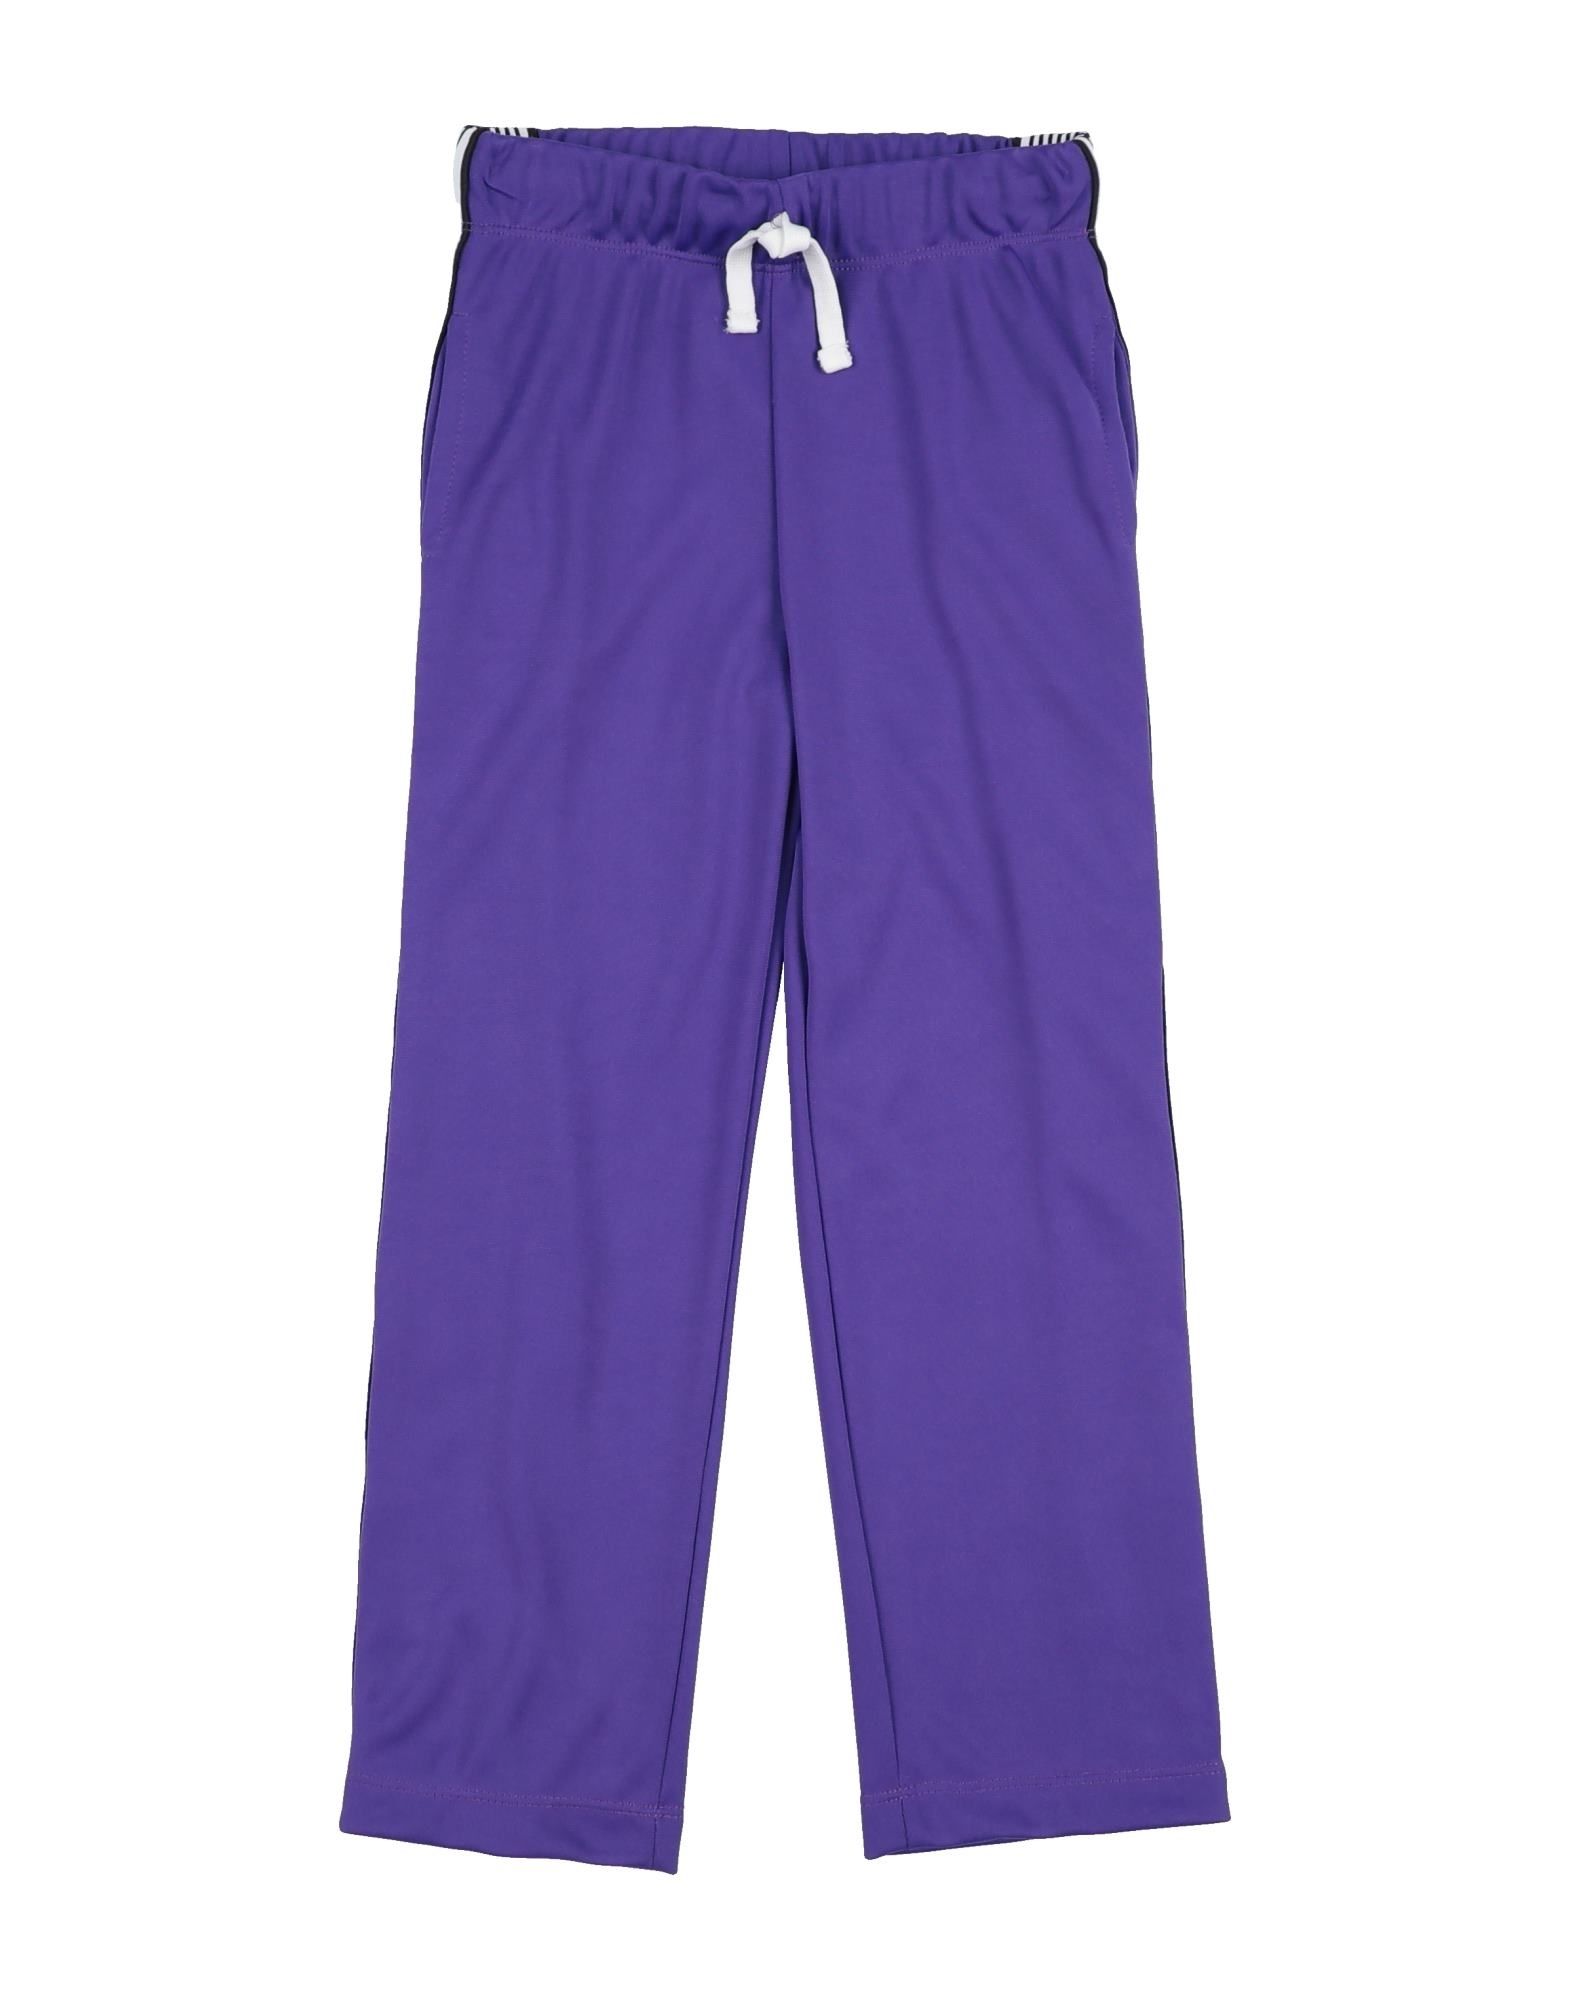 Chiara Ferragni Kids' Pants In Purple